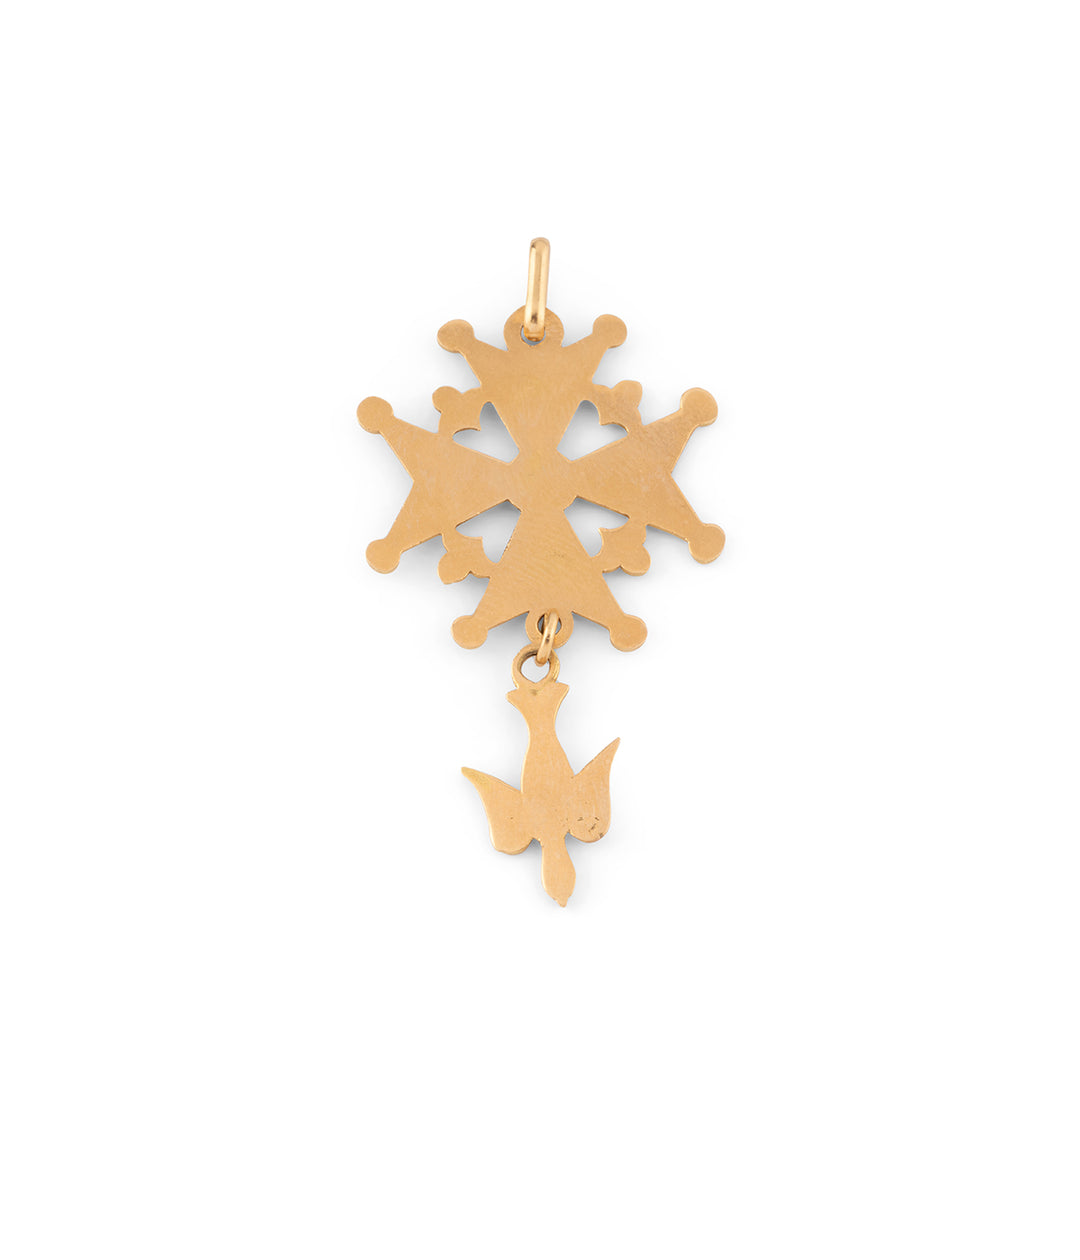 Croix médaille huguenote protestant en or "Kadou" - Caillou Paris